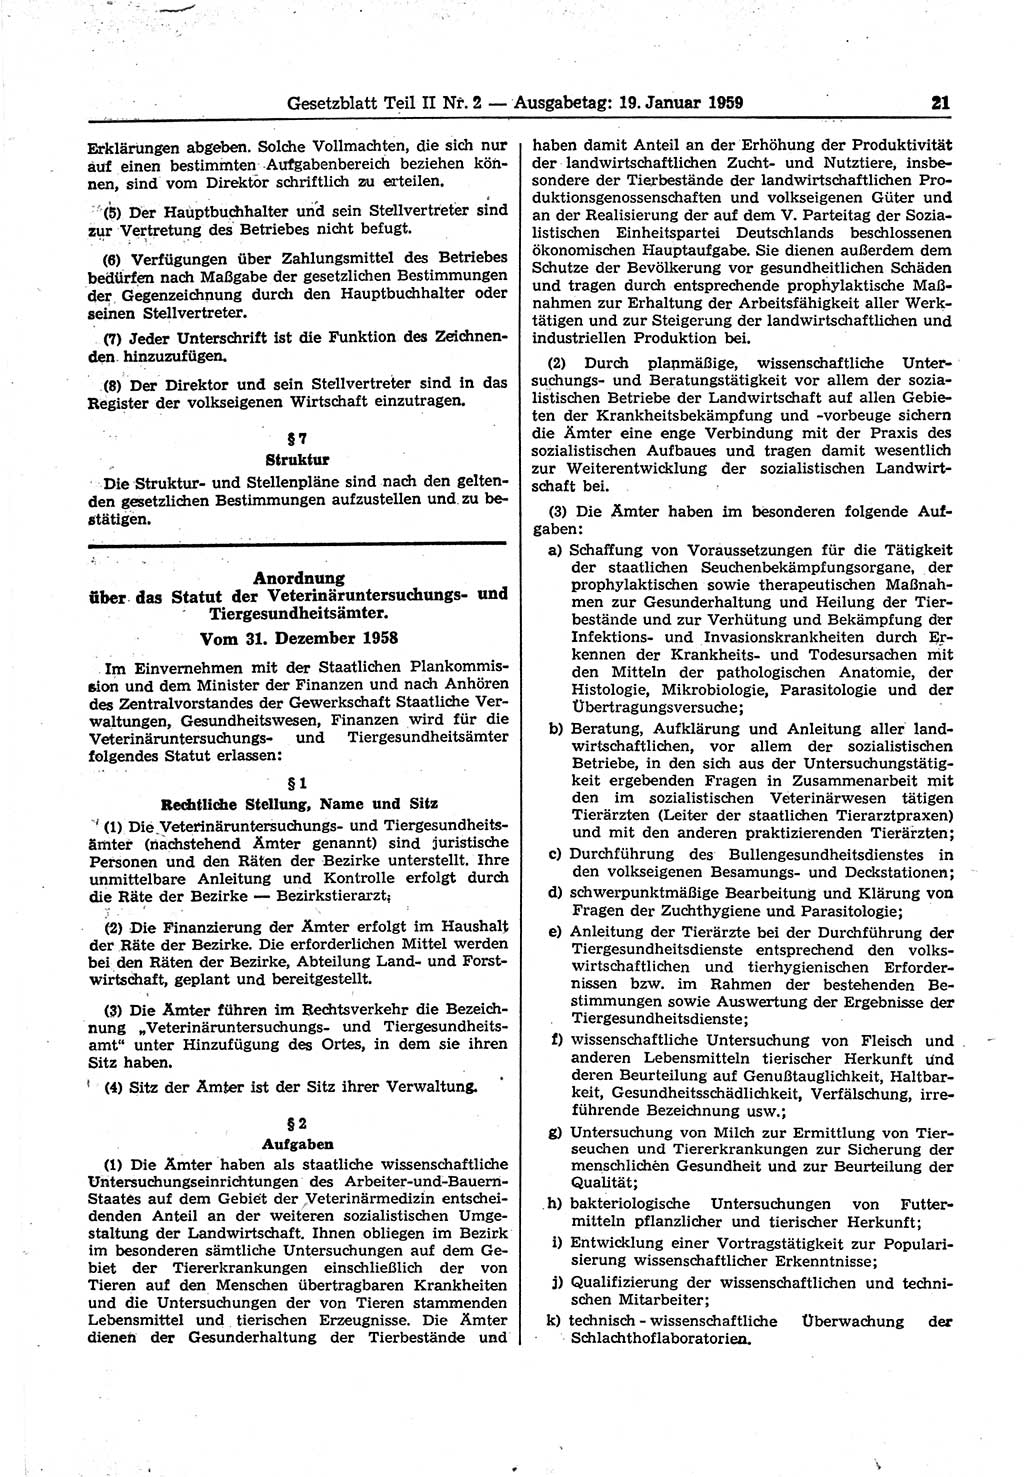 Gesetzblatt (GBl.) der Deutschen Demokratischen Republik (DDR) Teil ⅠⅠ 1959, Seite 21 (GBl. DDR ⅠⅠ 1959, S. 21)